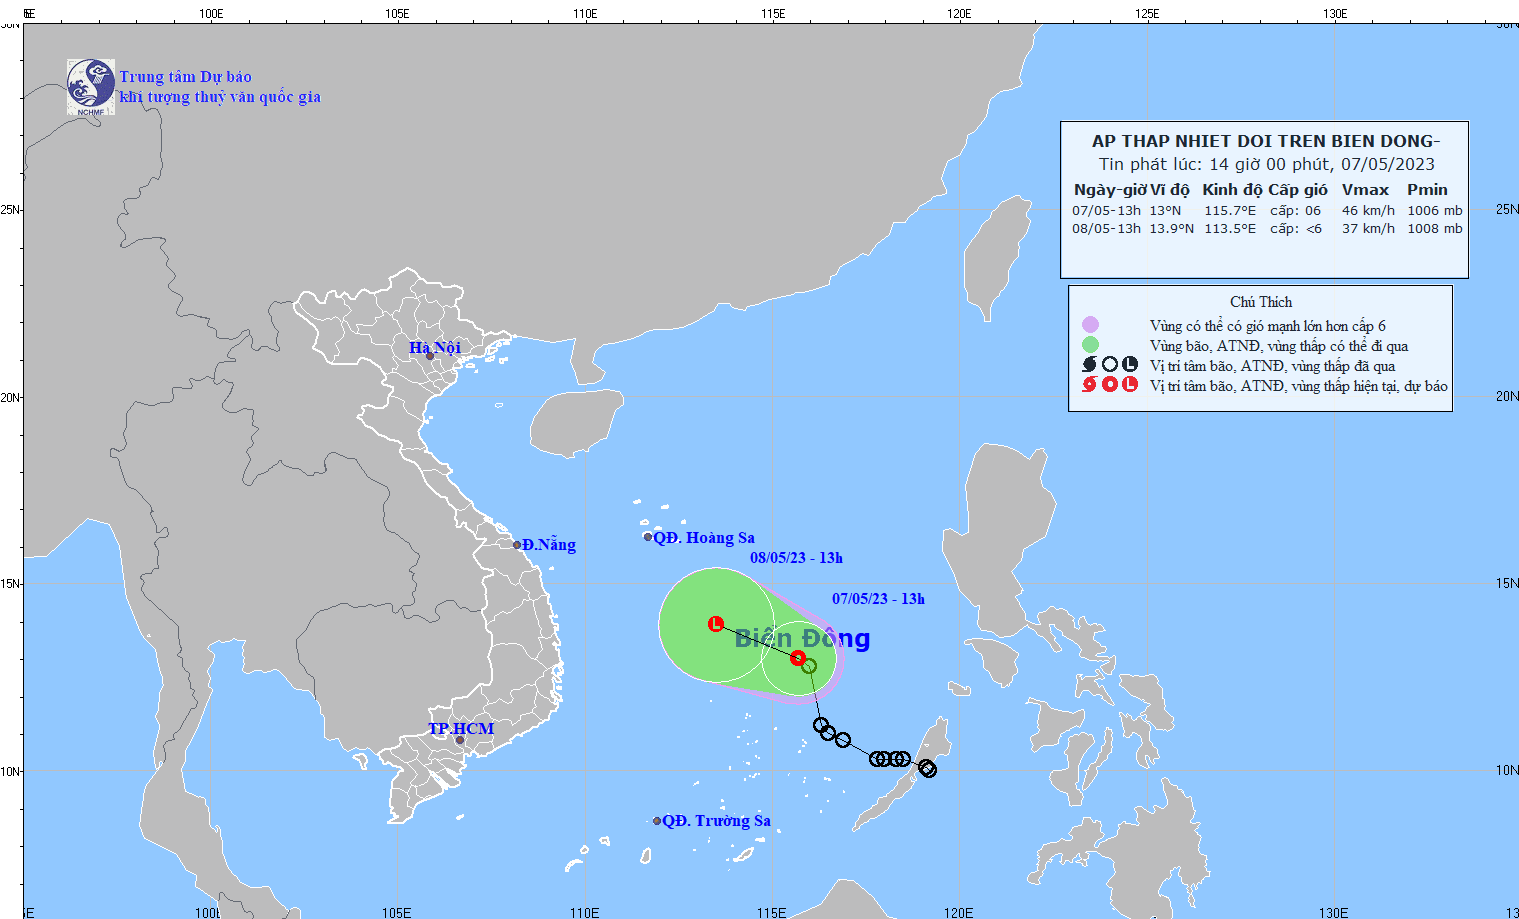 Dự báo, gần 24h giờ tới, áp thấp nhiệt đới trên Biển Đông sẽ suy yếu thành vùng áp thấp, cường độ giảm dần